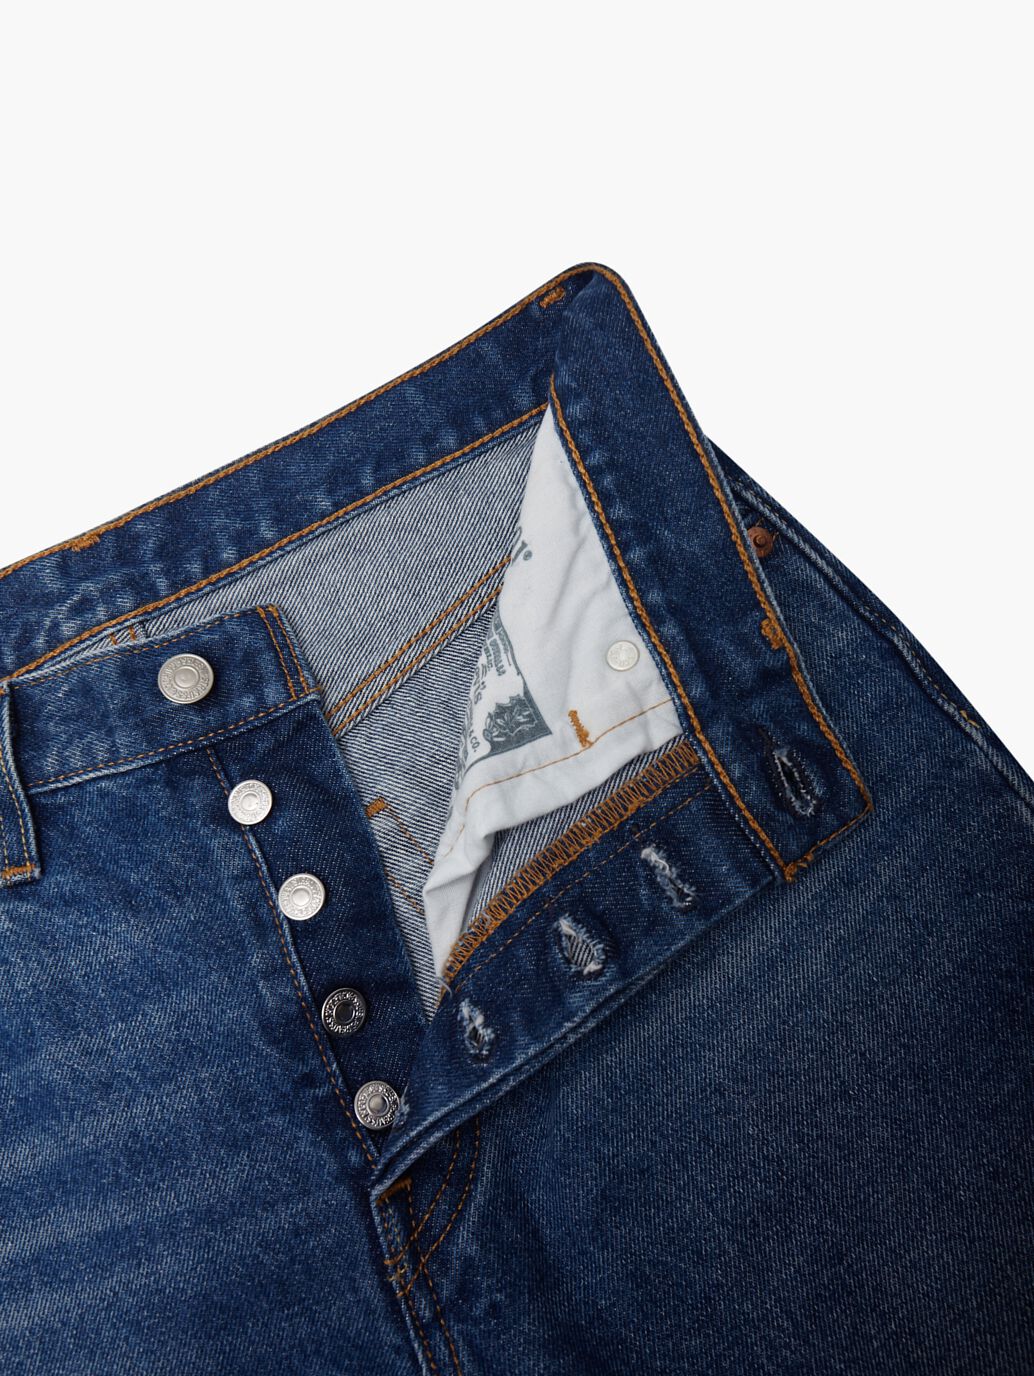 501® Original Fit Jeans in Medium Indigo Worn In